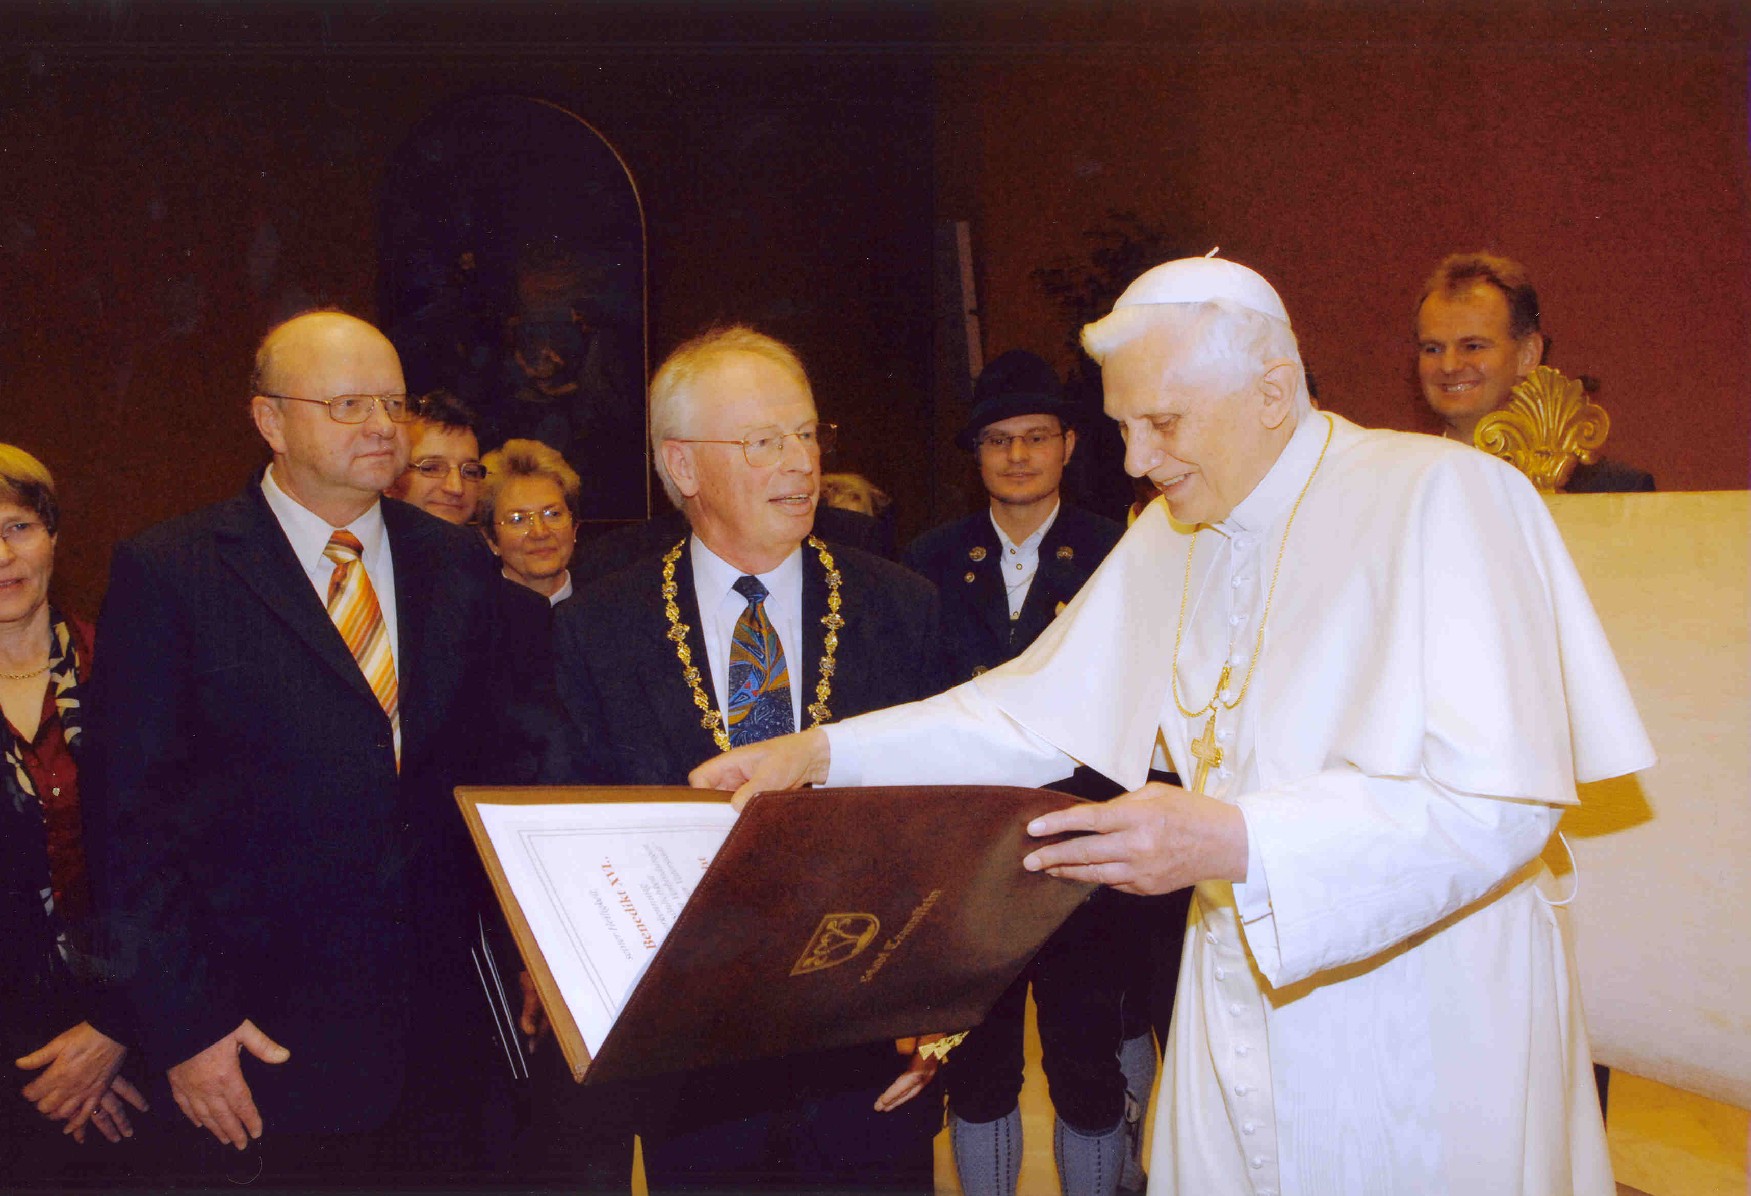 Verleihung der Ehrenbürgerurkunde an Papst Benedikt XVI. am 8. Februar 2006. (© Stadtarchiv Traunstein)